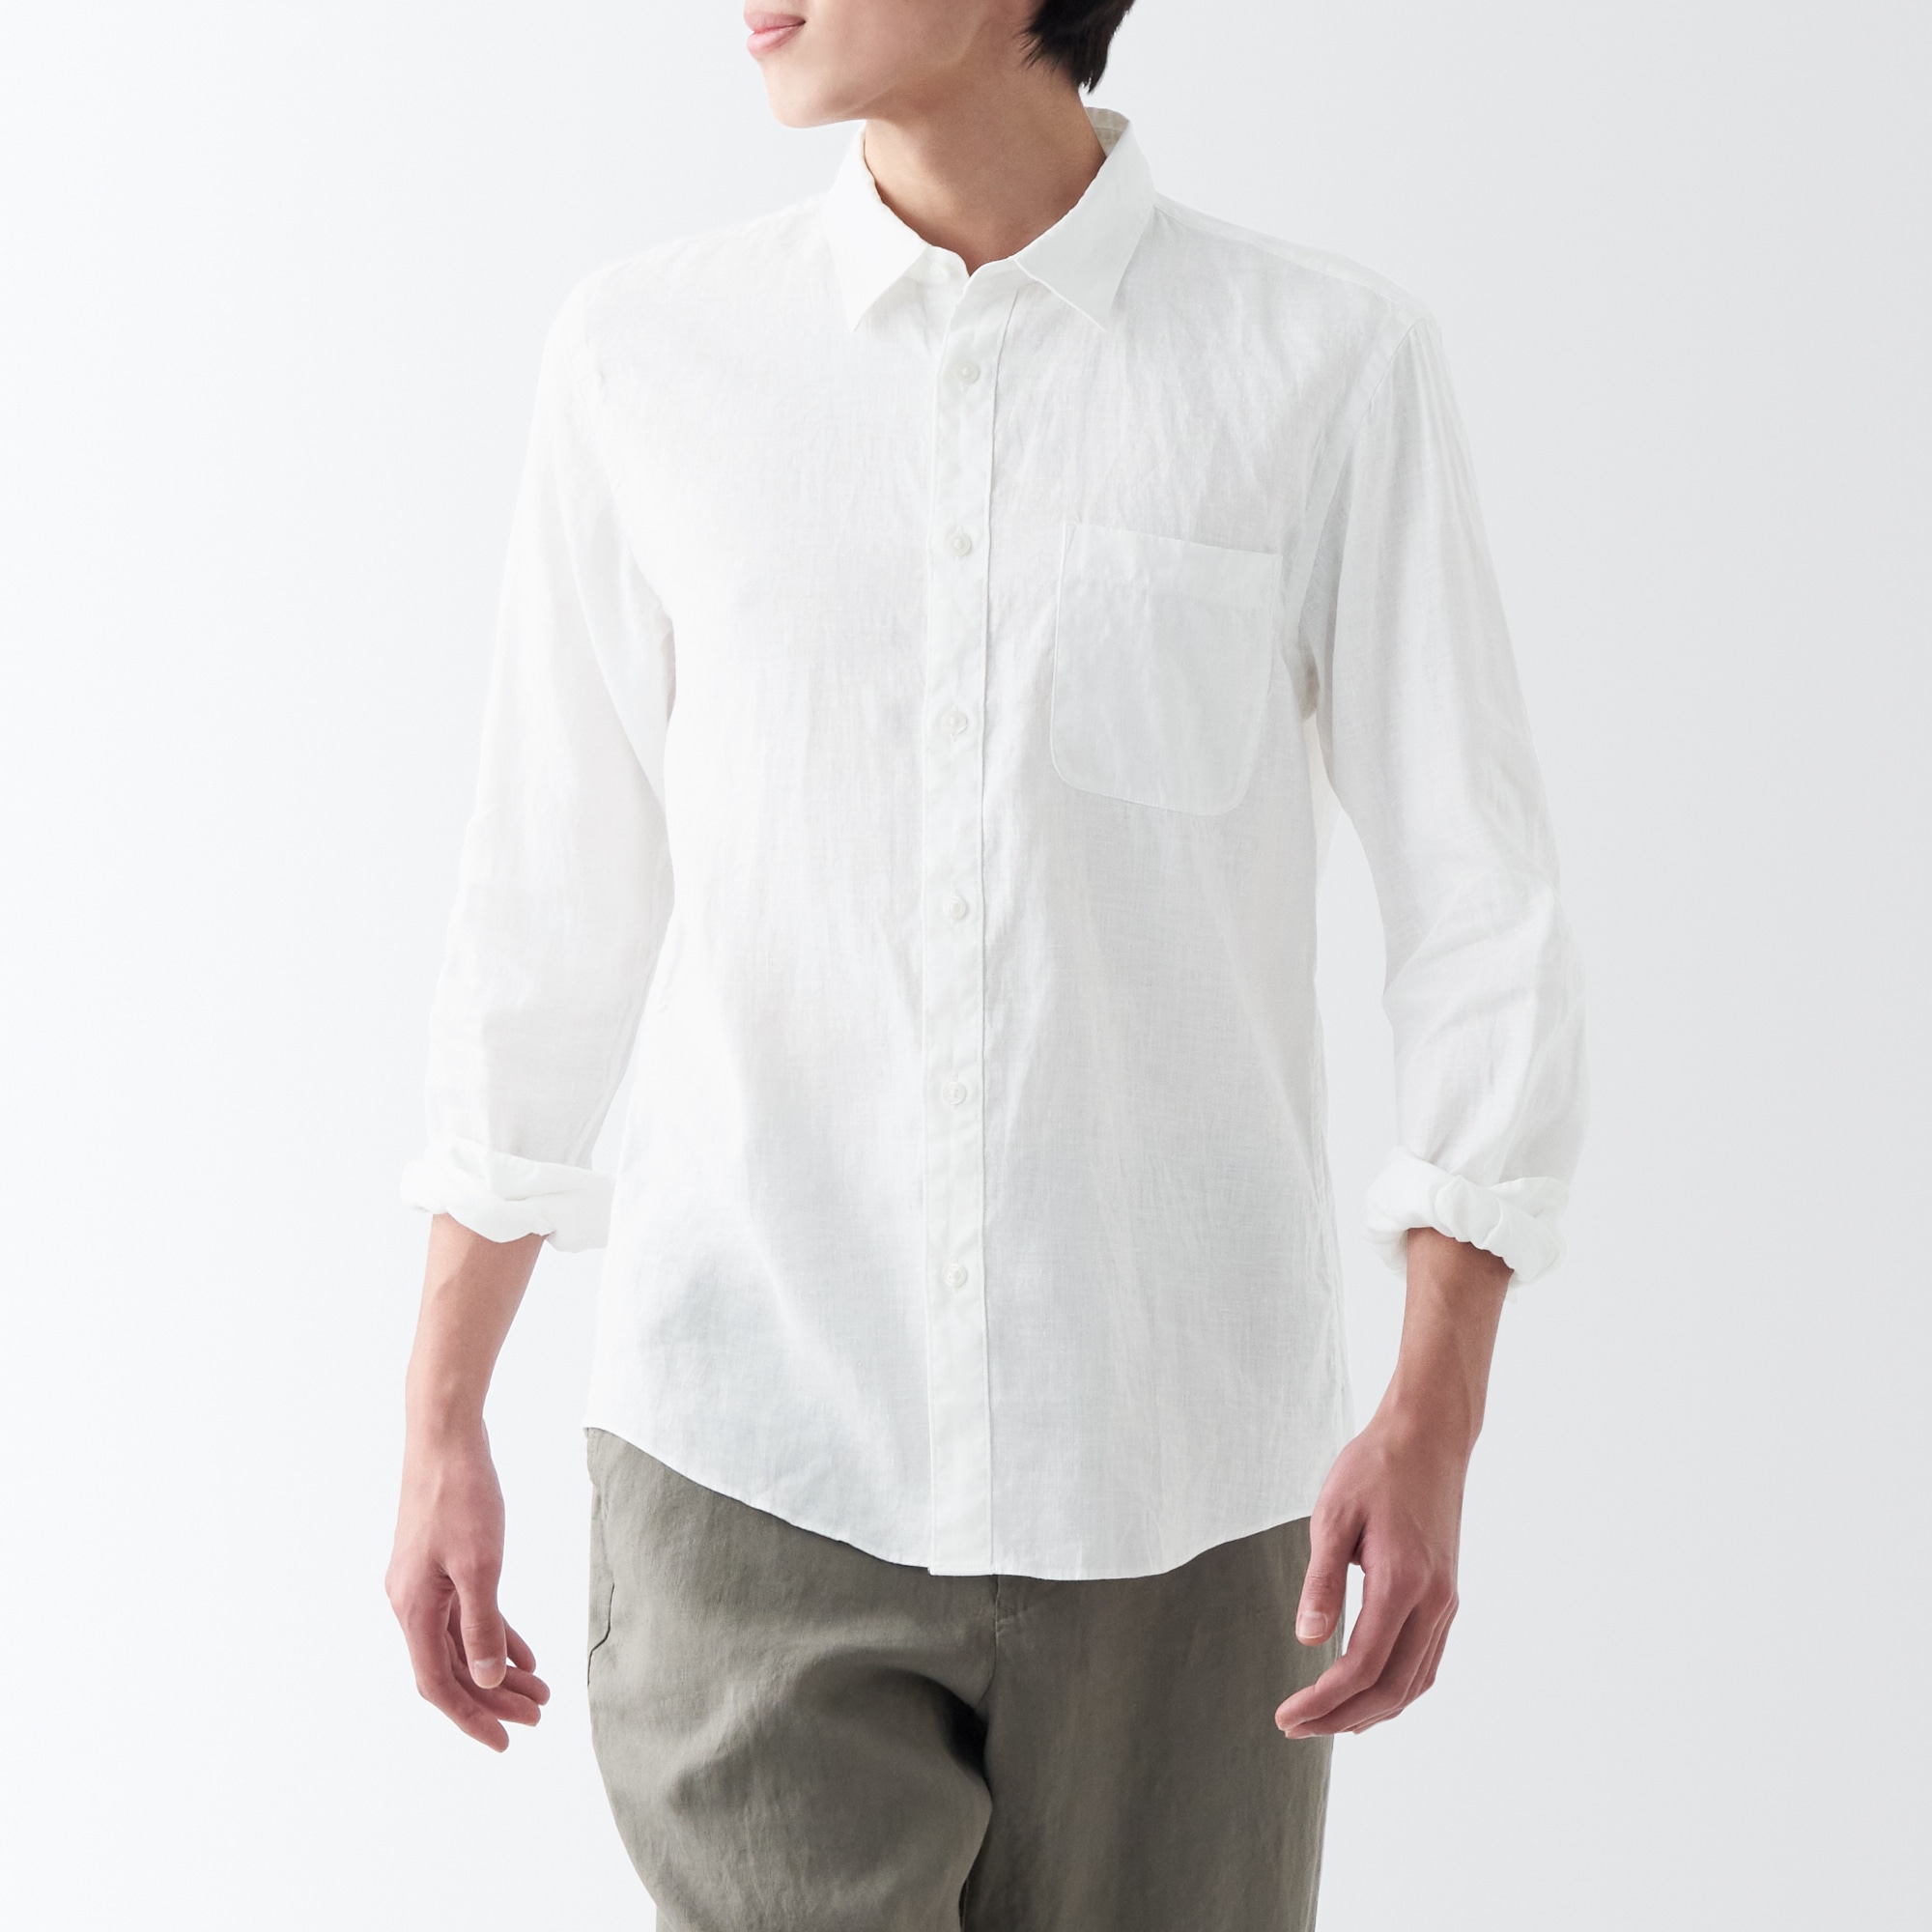 무인양품 일본 남성 긴팔 셔츠 헴프 워시드 아웃